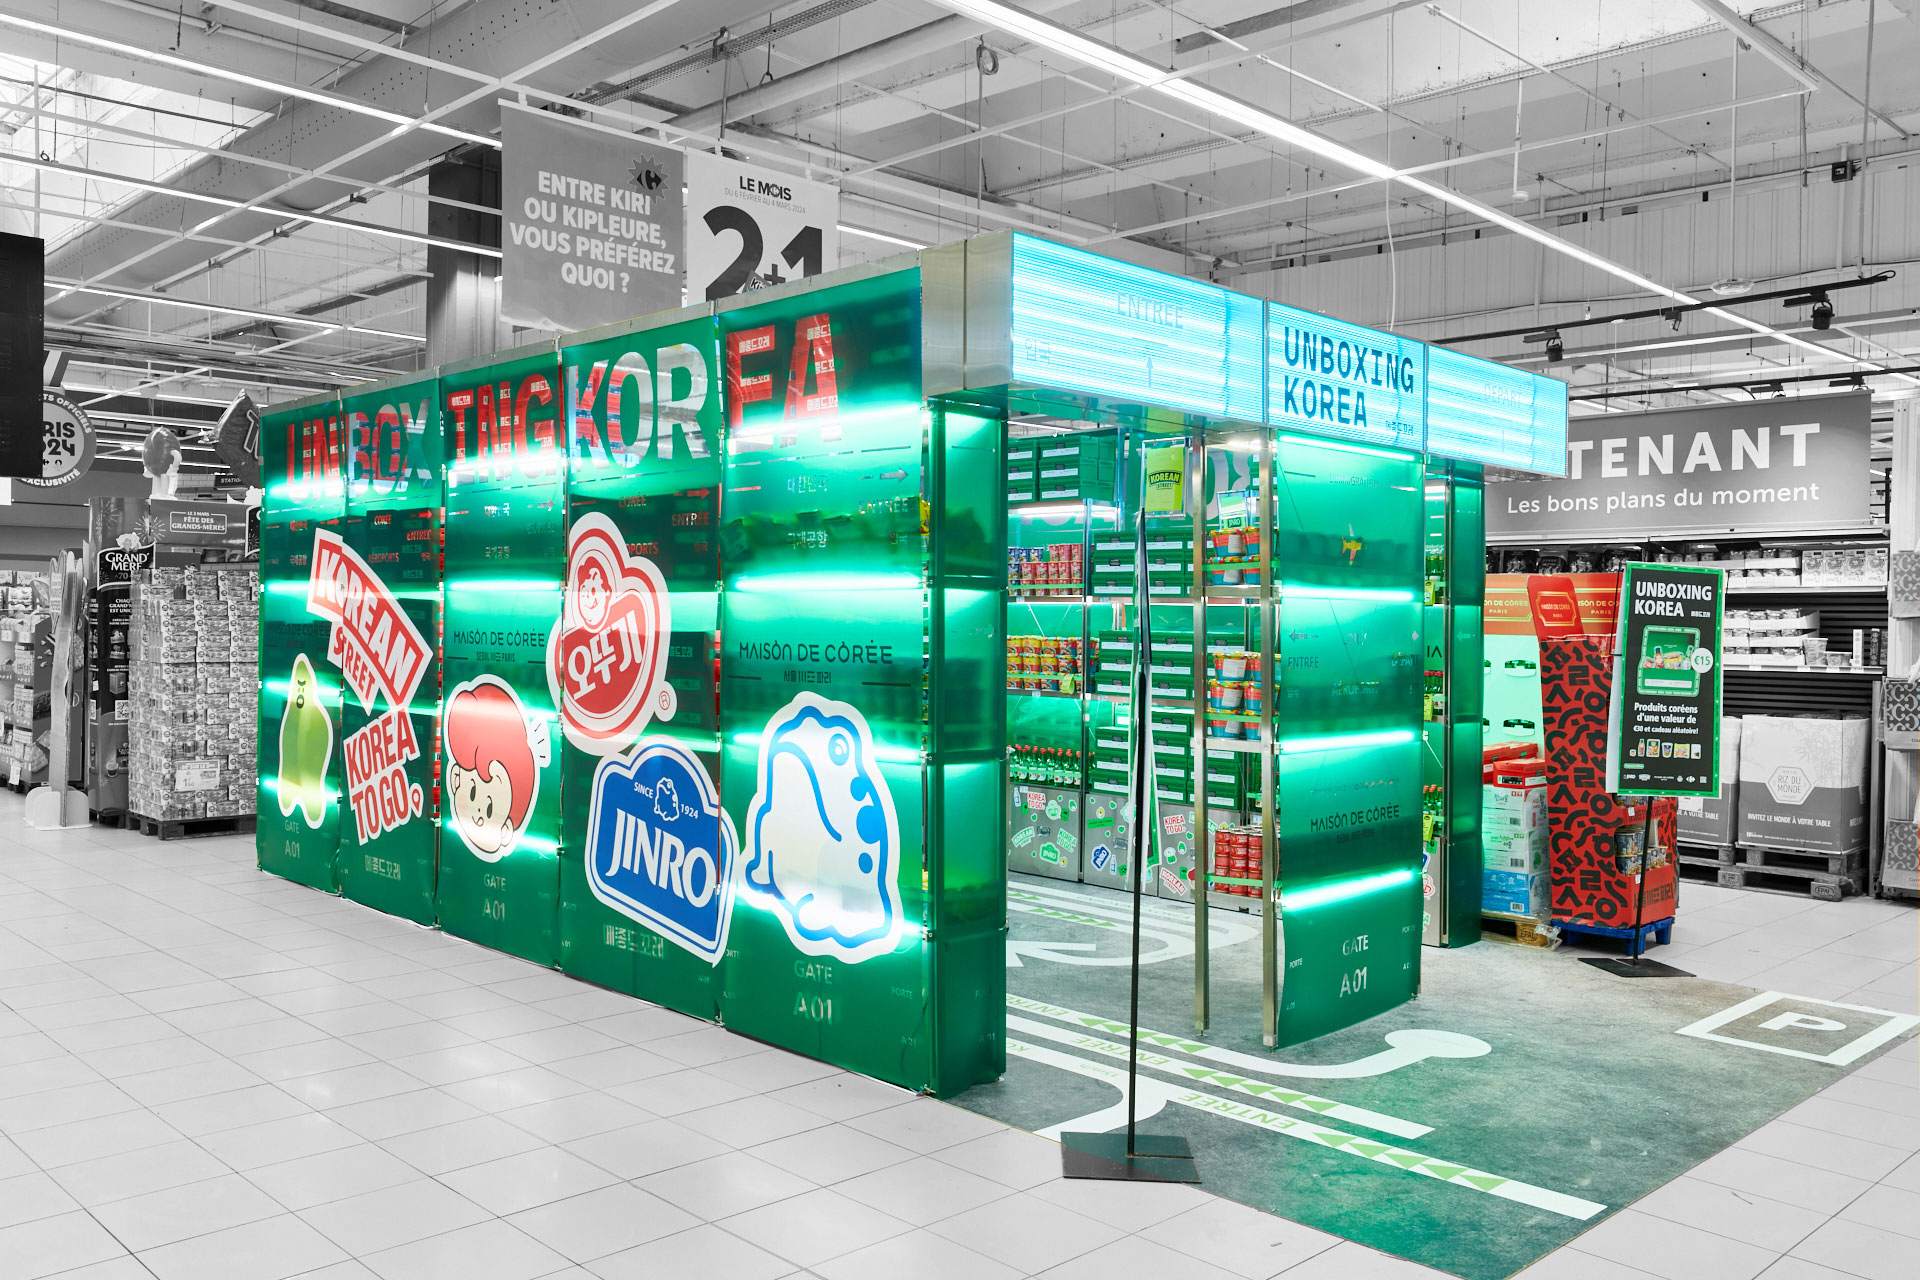 Vue de l'entrée du pop up store UNBOXING KOREA implanté dans à Carrefour